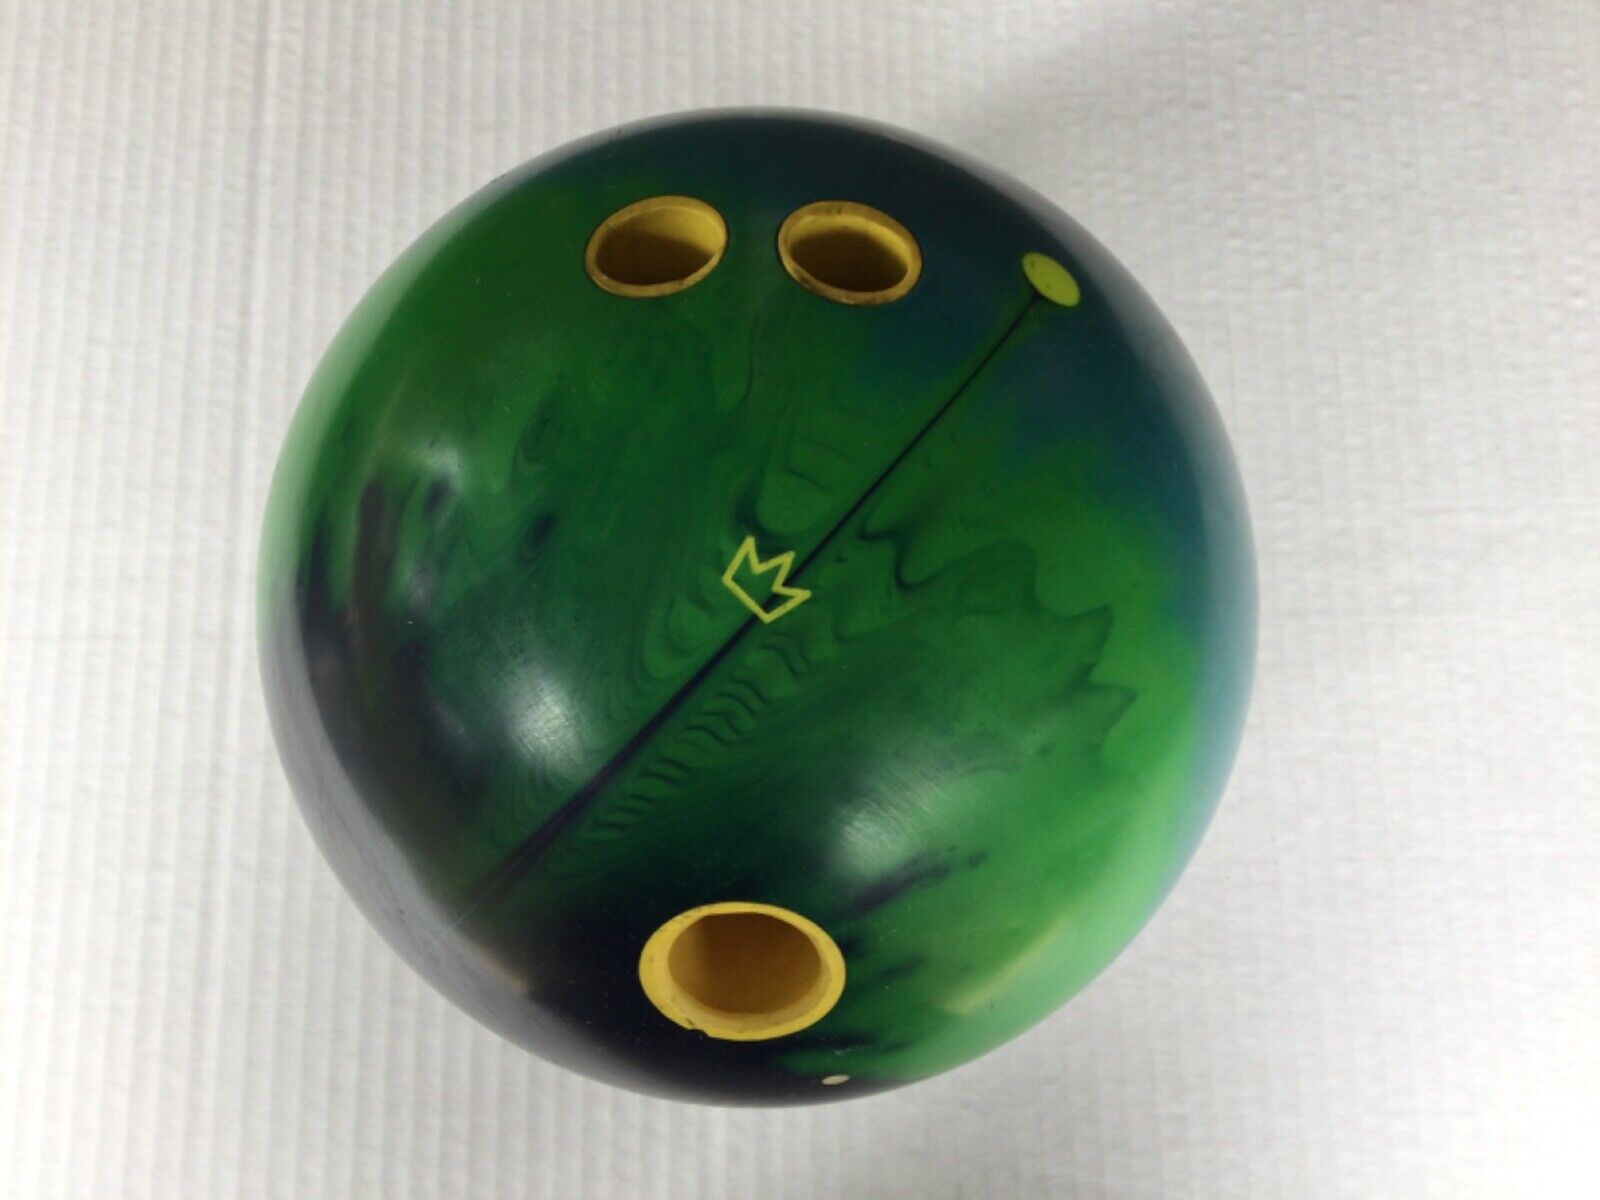 Used 15lb Brunswick King Pin Max Bowling Ball